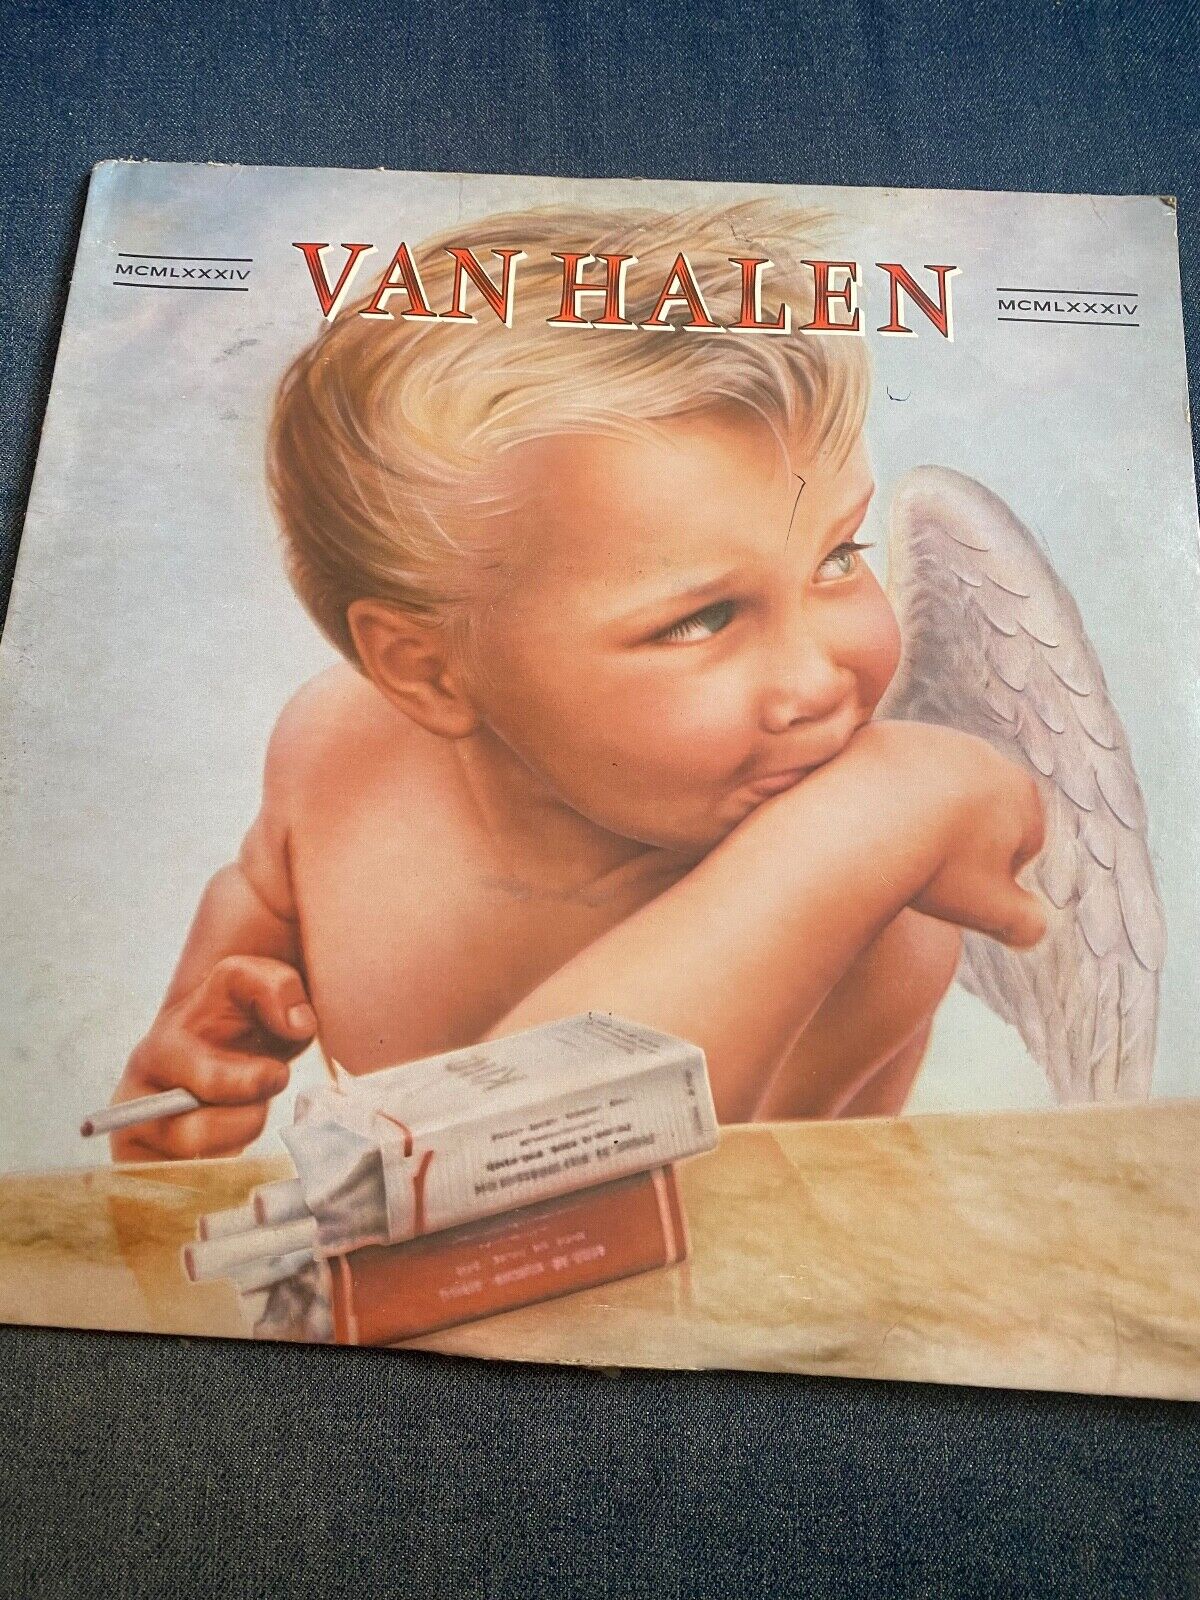 1984 VAN HALEN MCMLXXXIV LP Vinyl Record - Back Upside Down Vinyl is NM